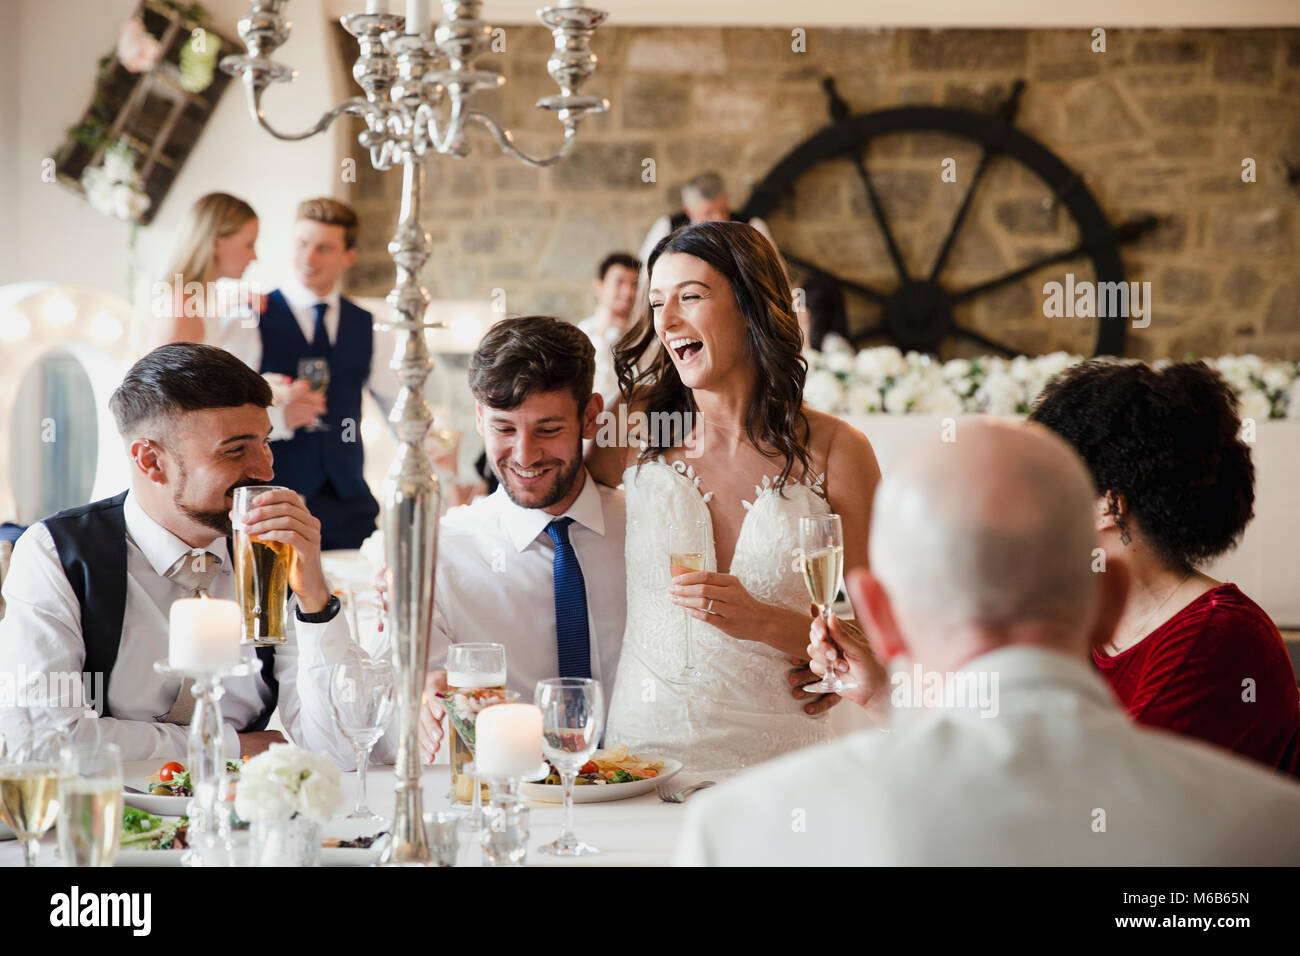 Heureux, couple de jeunes mariés sont socialiser avec les clients de leur repas de mariage. La mariée est assise sur les genoux de son mari et ils rient et drinki Banque D'Images